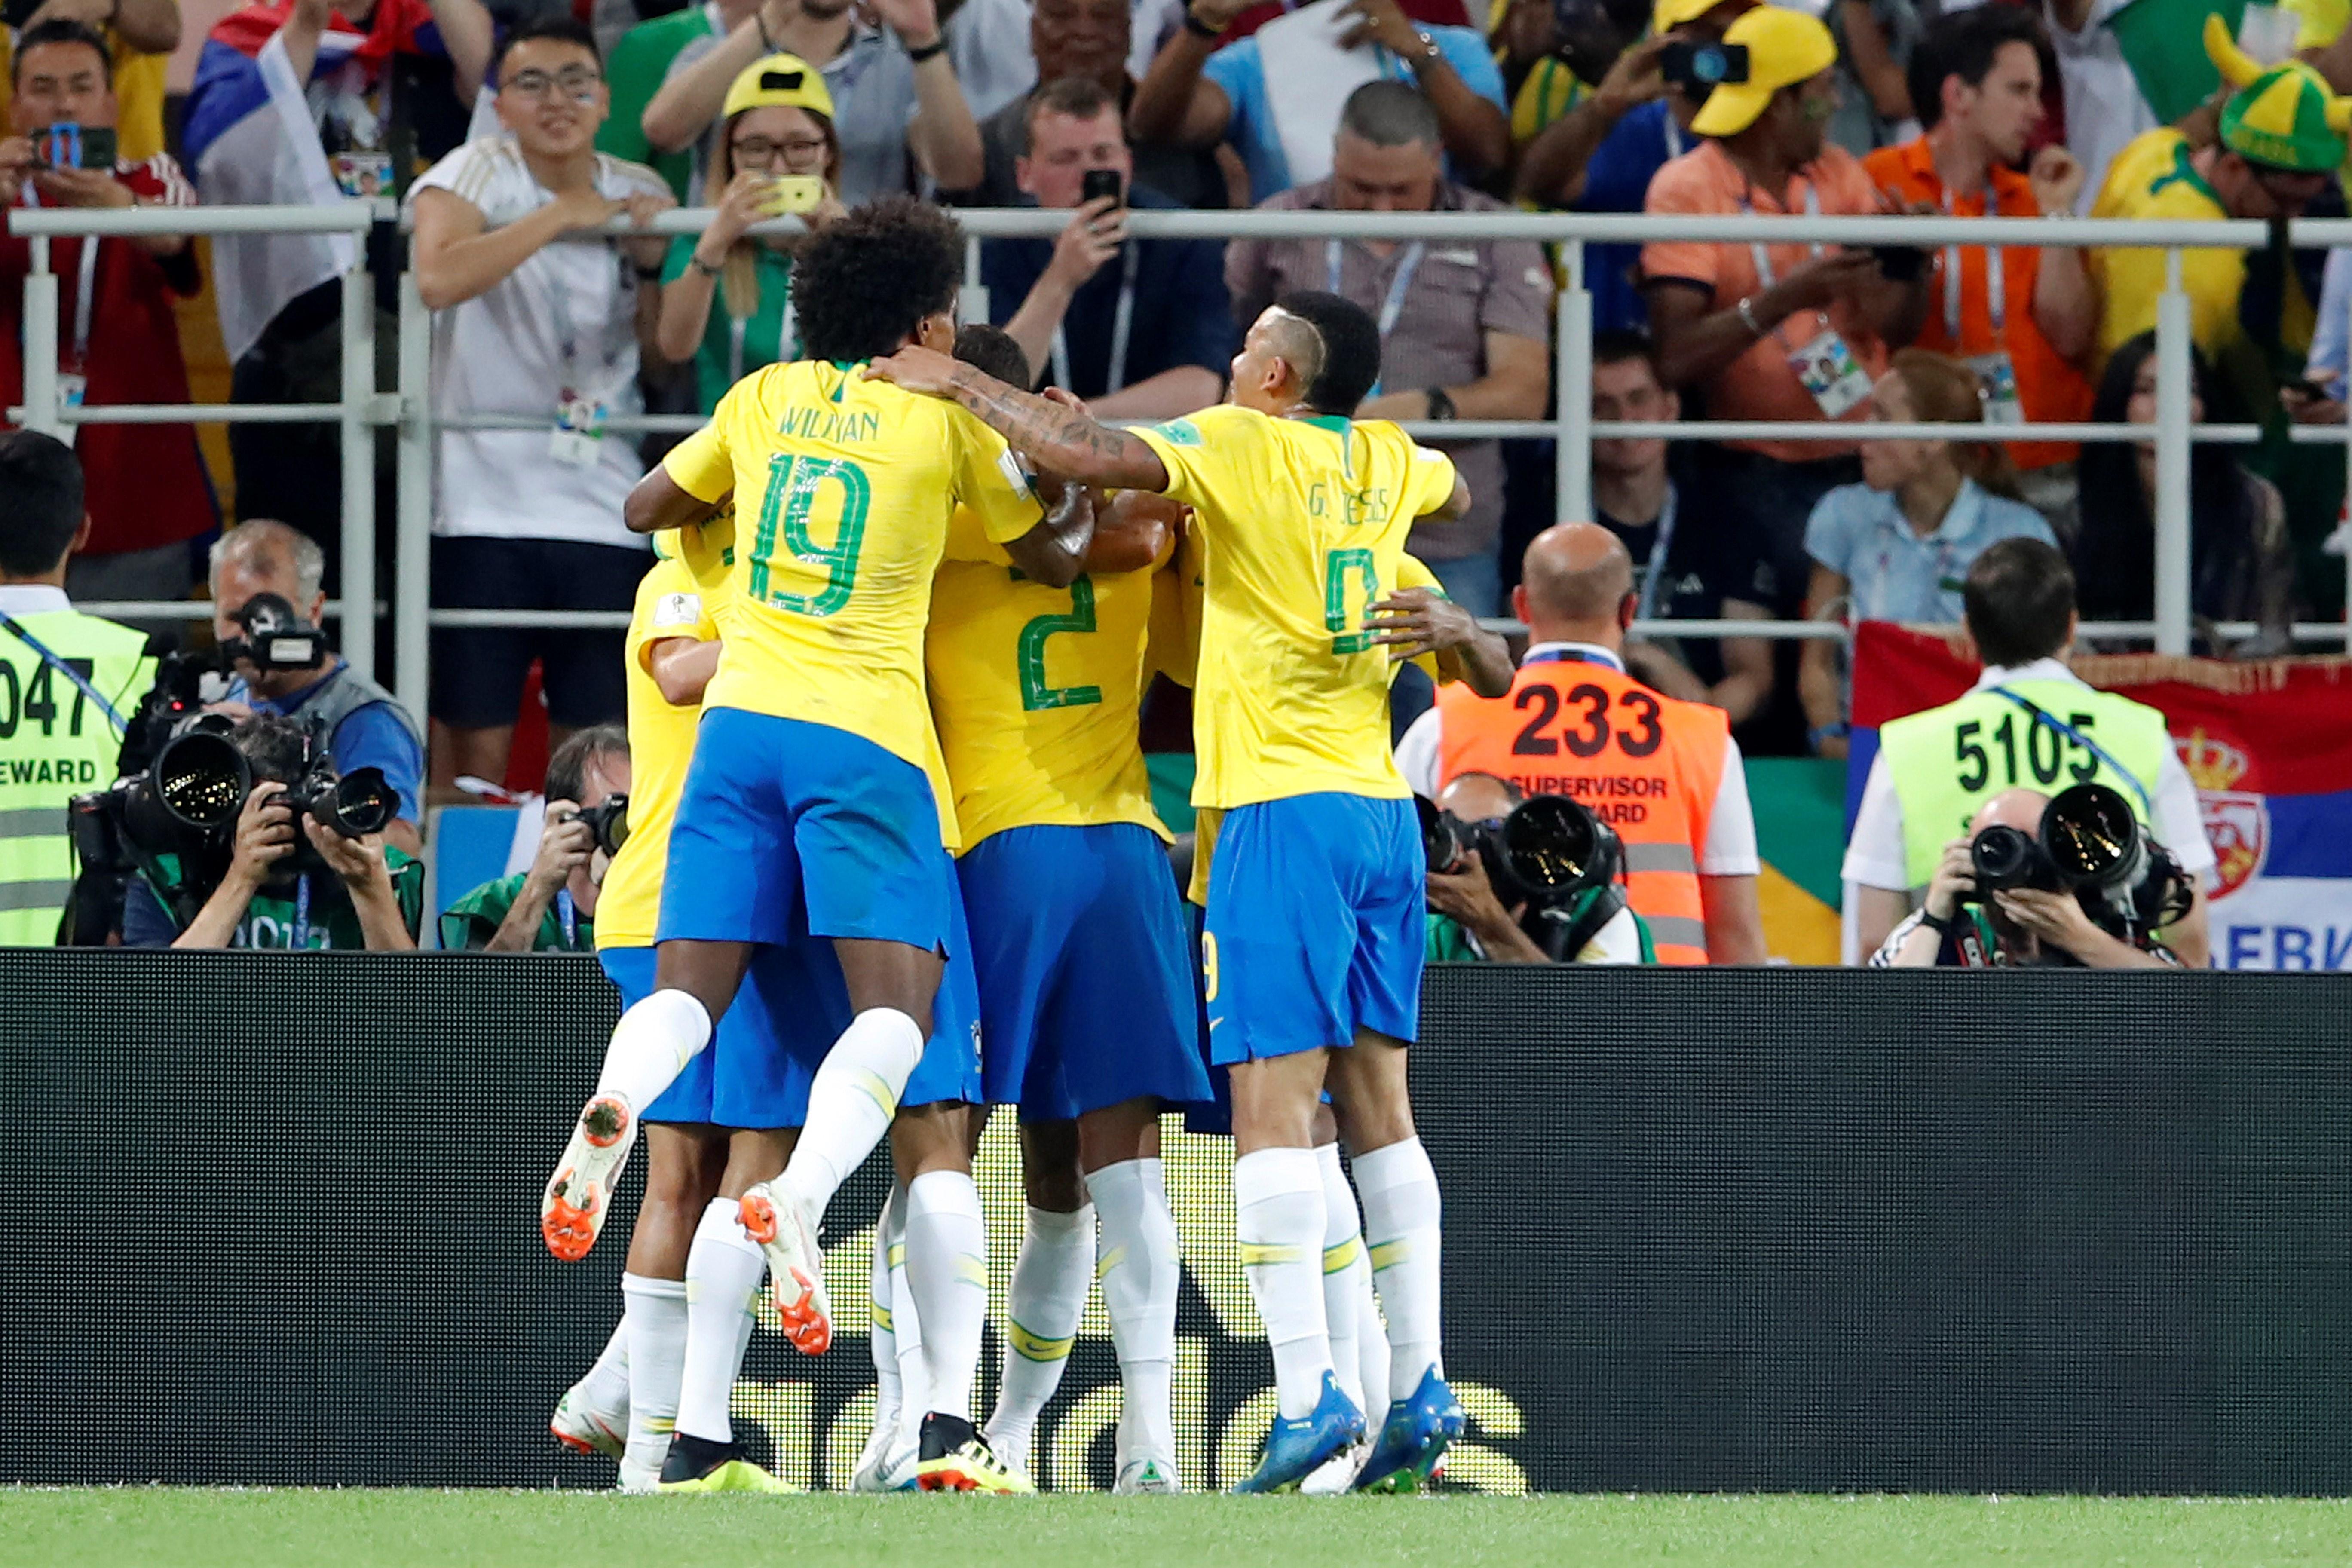 El Brasil ja és fiable (0-2)